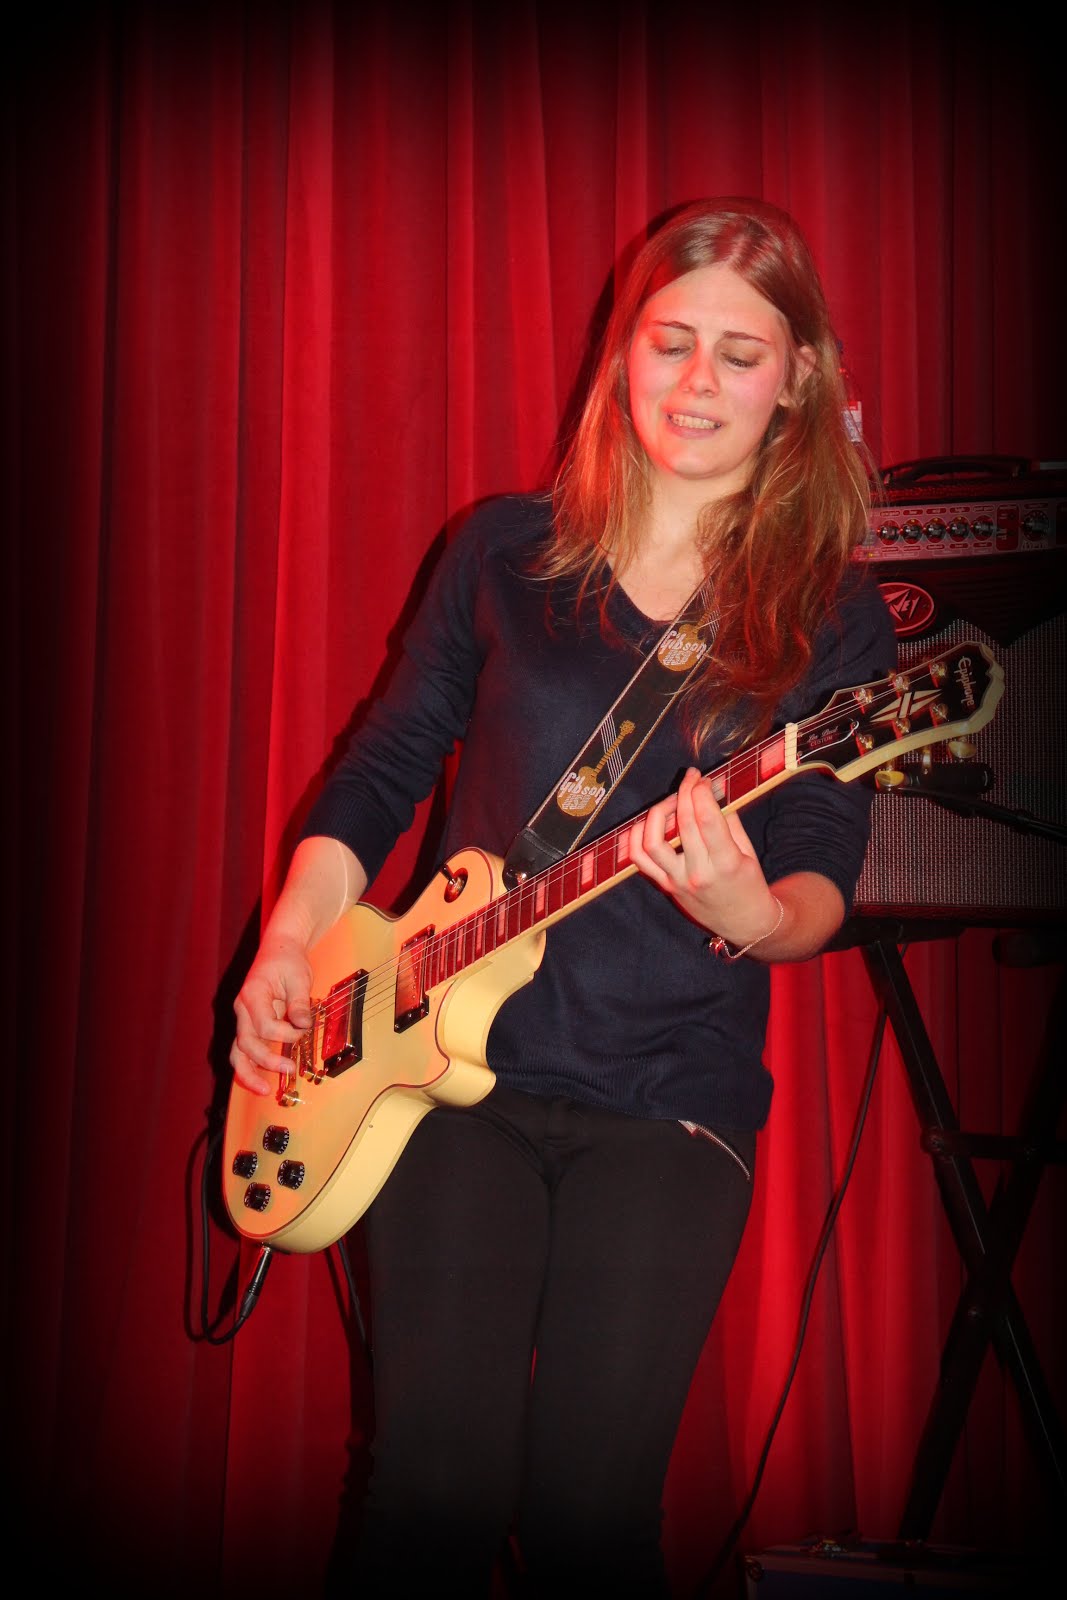 tatiana guitar - 2015